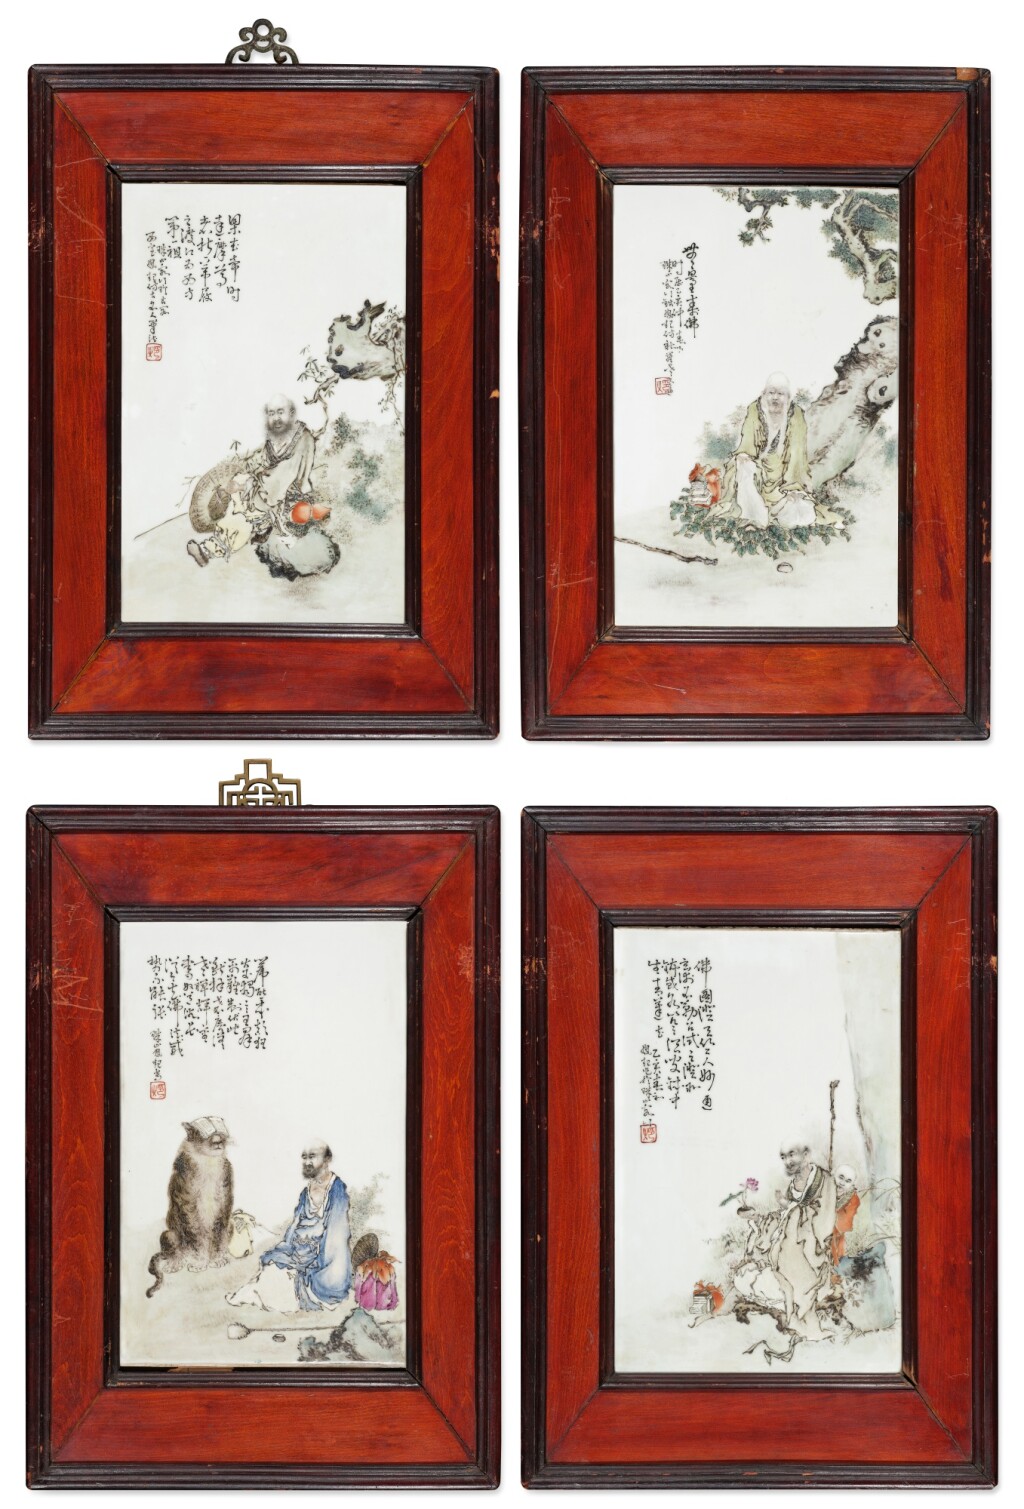 錢鳳起作佛教人物圖瓷板一套四幅